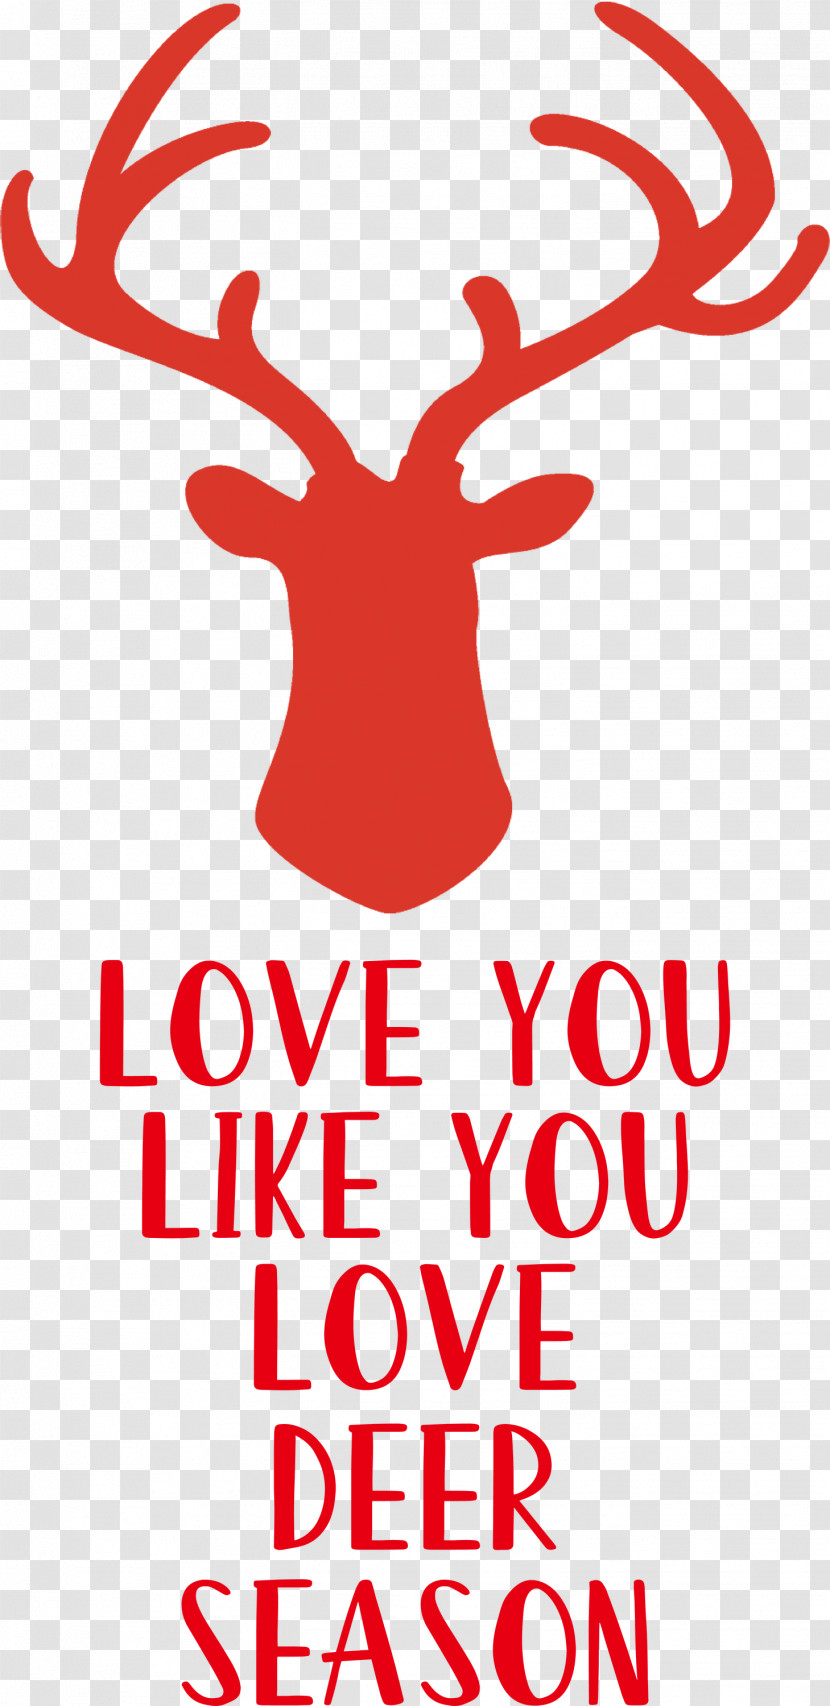 Love Deer Season Transparent PNG